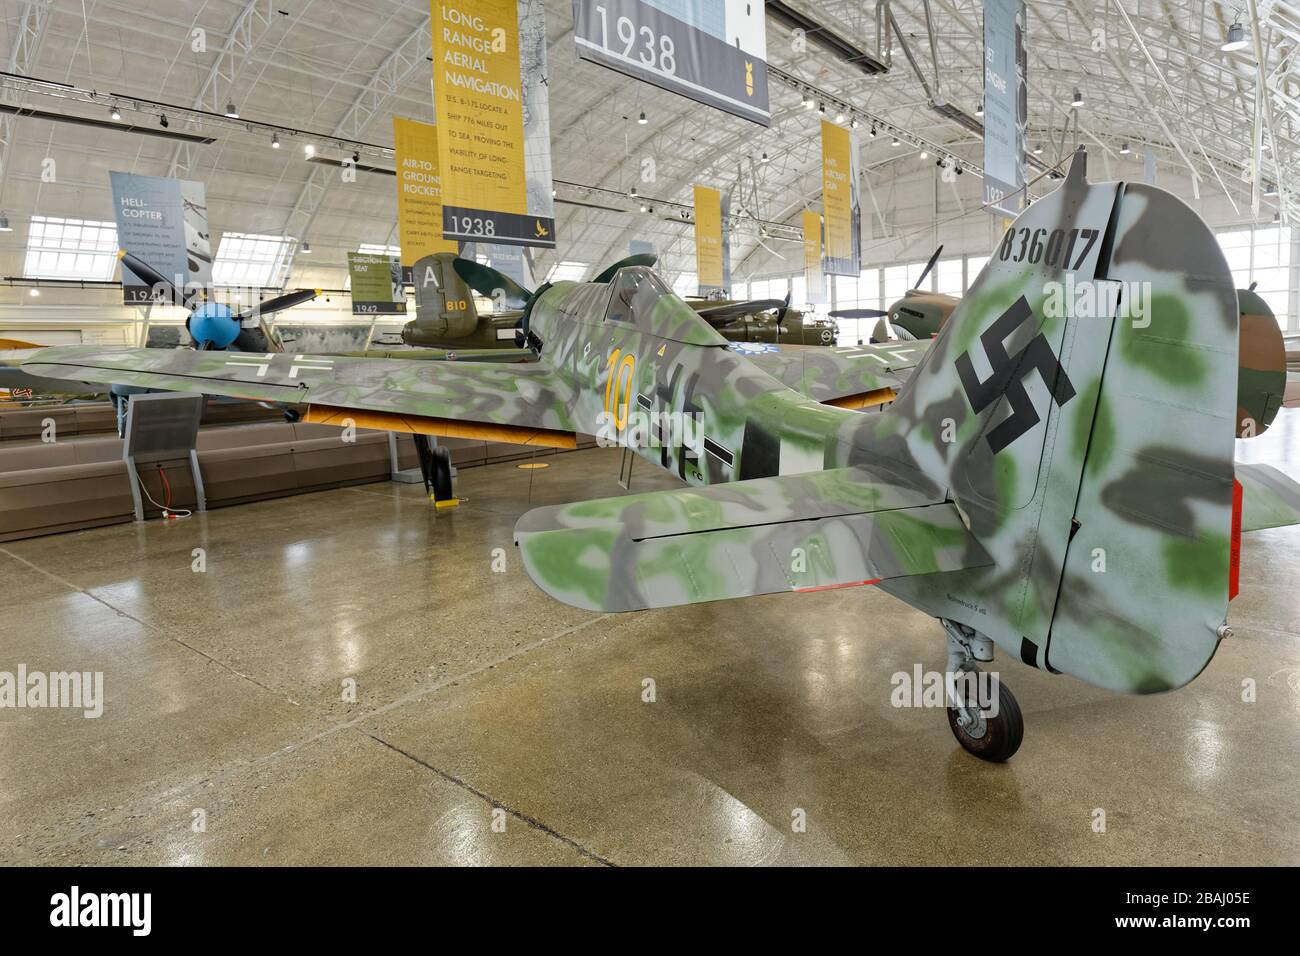 19 SETTEMBRE 2015, EVERETT, WA: Un FW 190 D-13 di Focke-Wulf si trova in mostra in un museo della zona di Seattle. Foto Stock